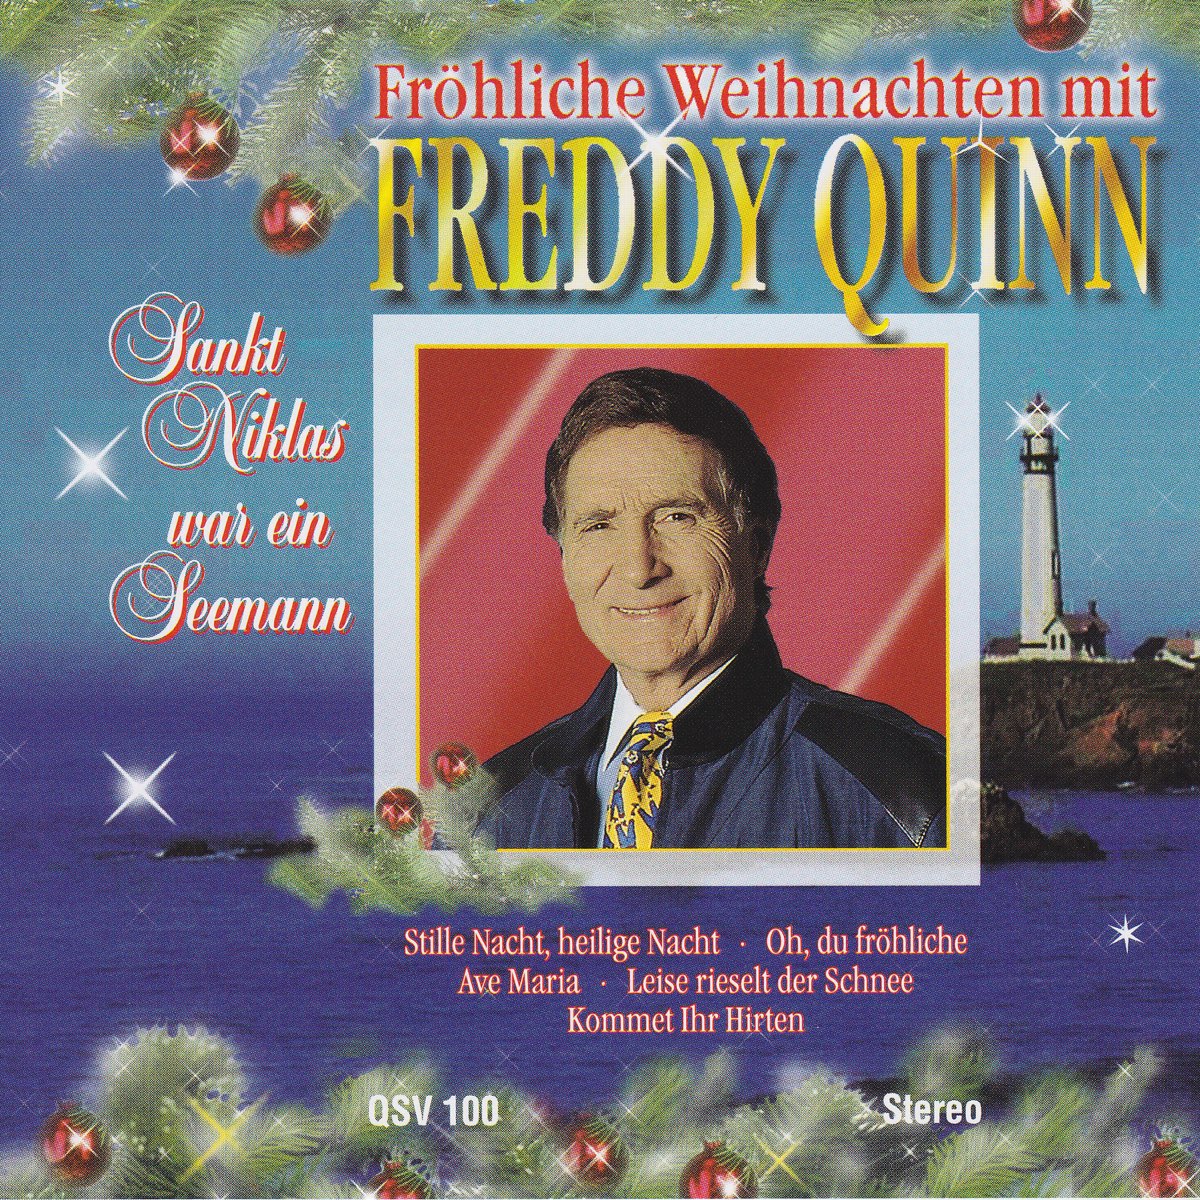 Sankt Niklas war ein Seemann - Fröhliche Weihnachten mit Freddy Quinn by  Freddy Quinn on Apple Music